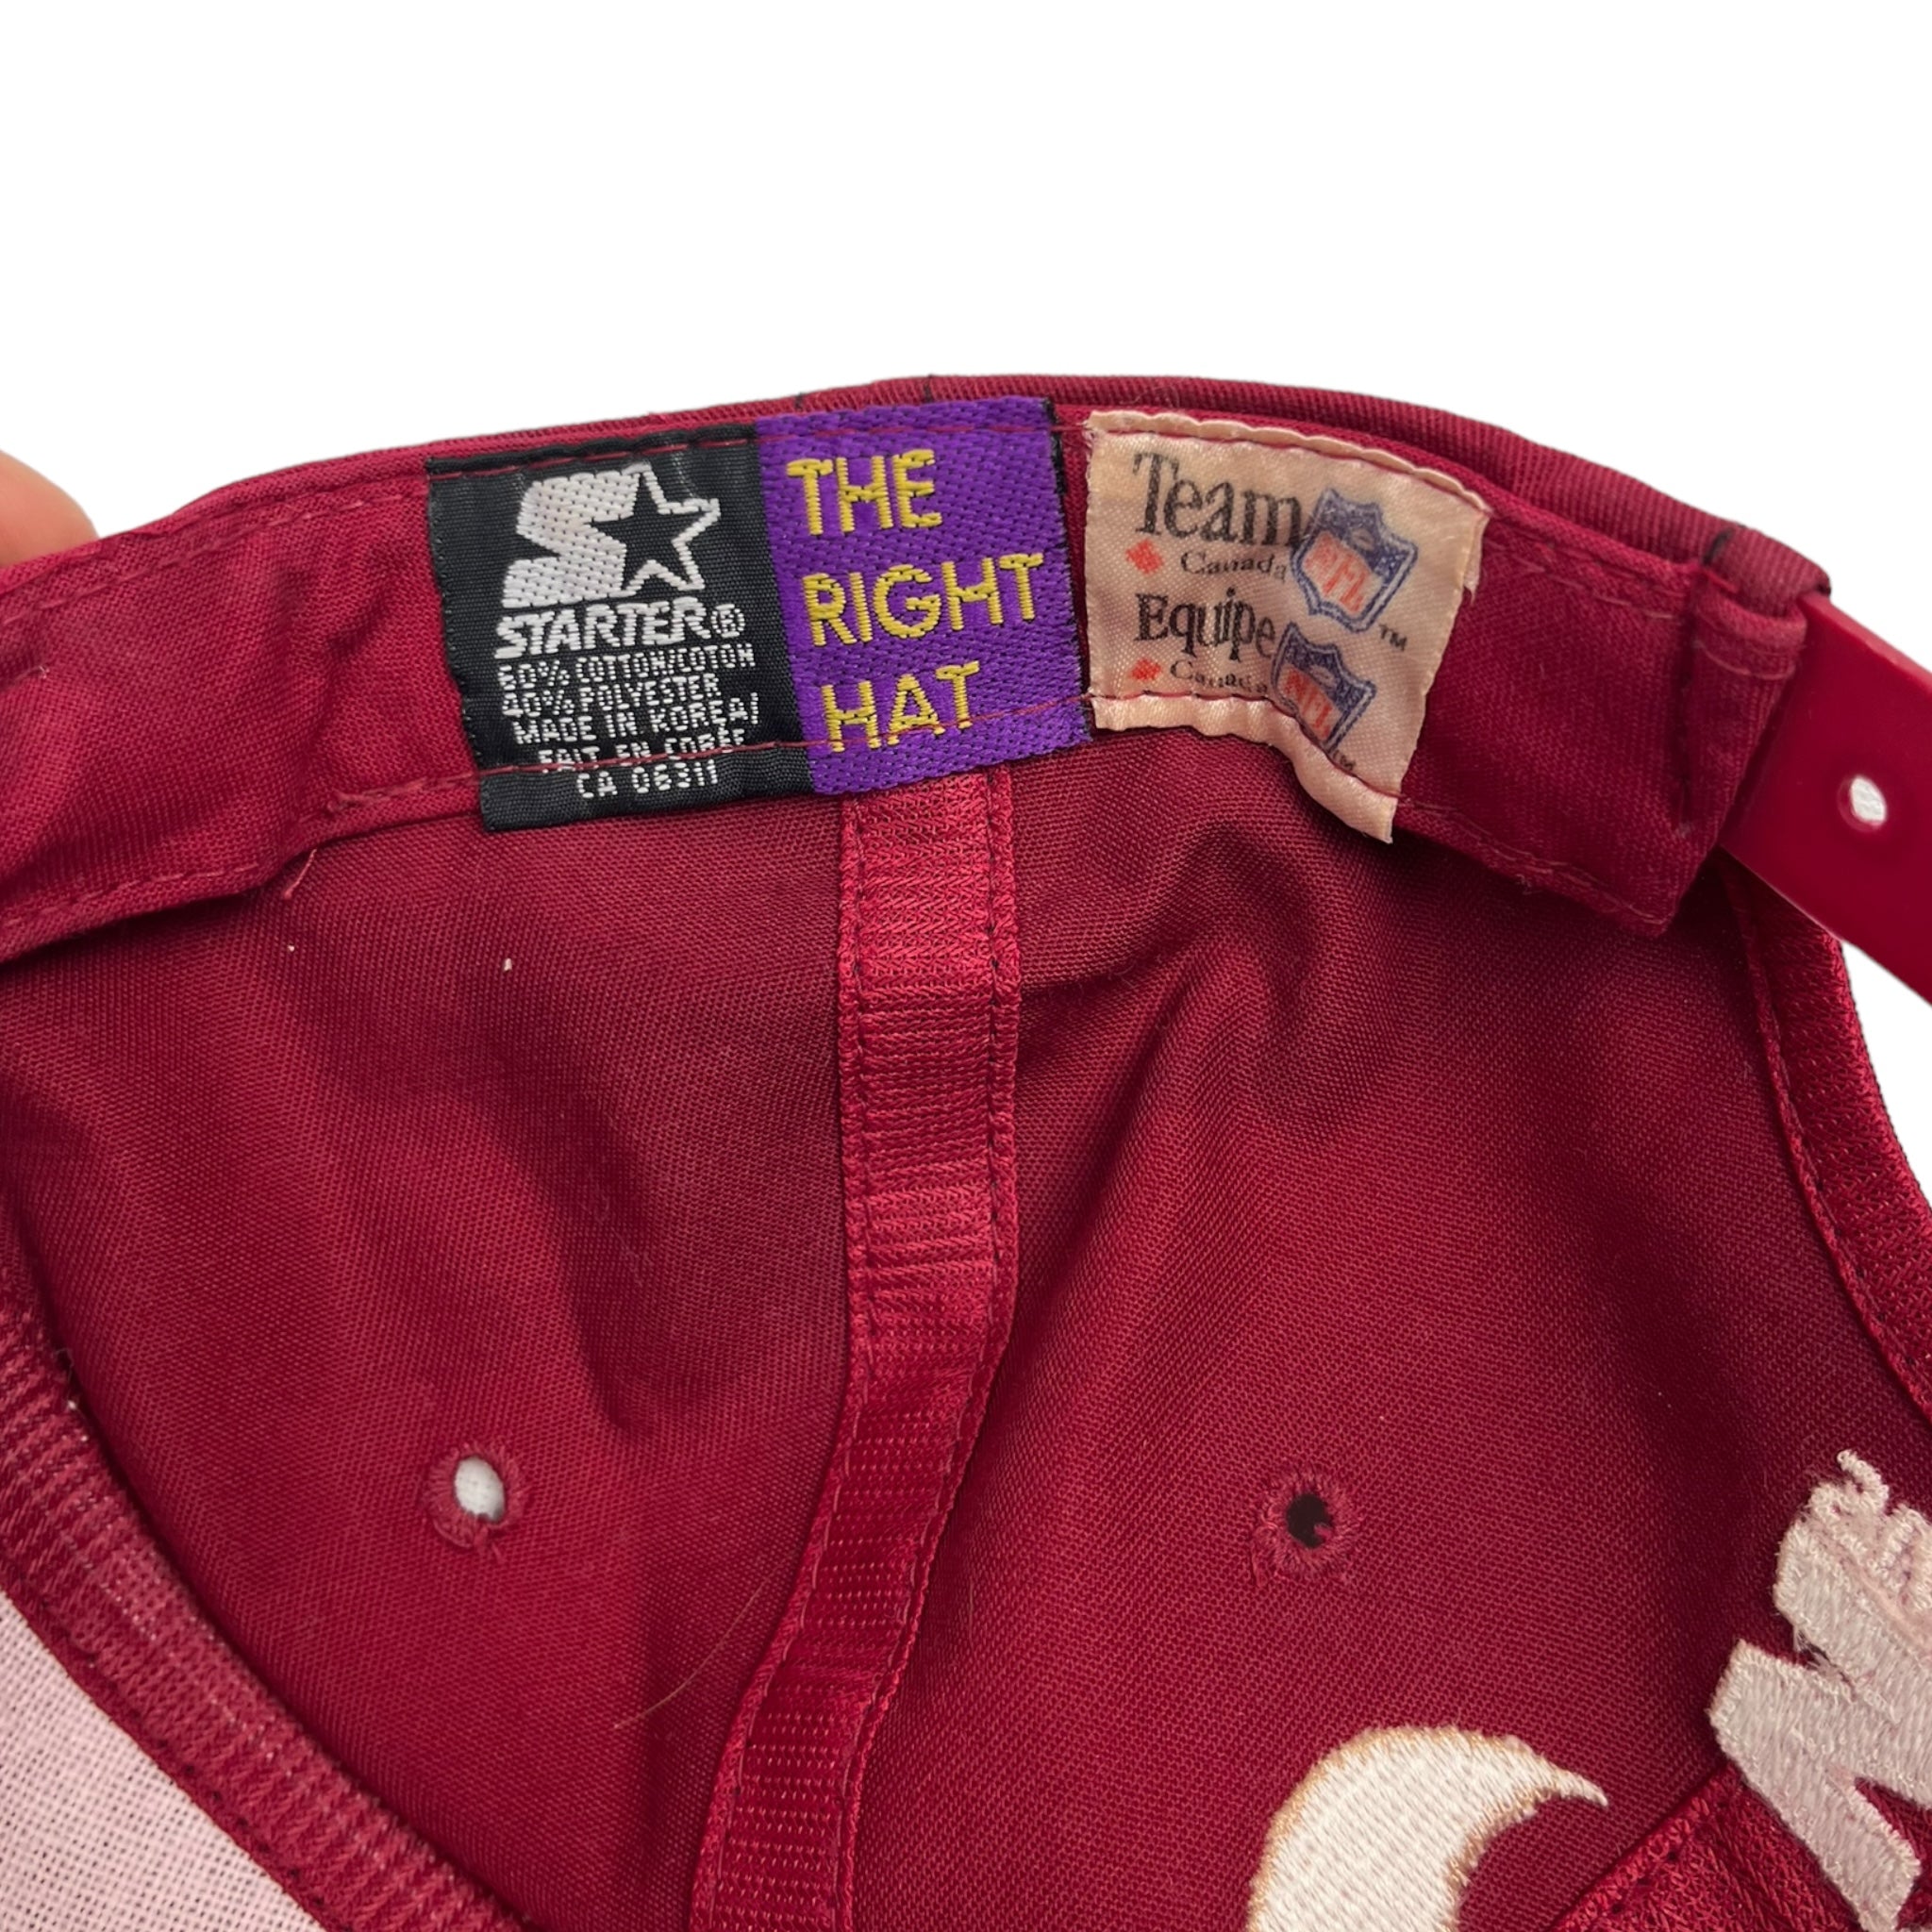 Vintage 49ers Steve Young Starter Hat